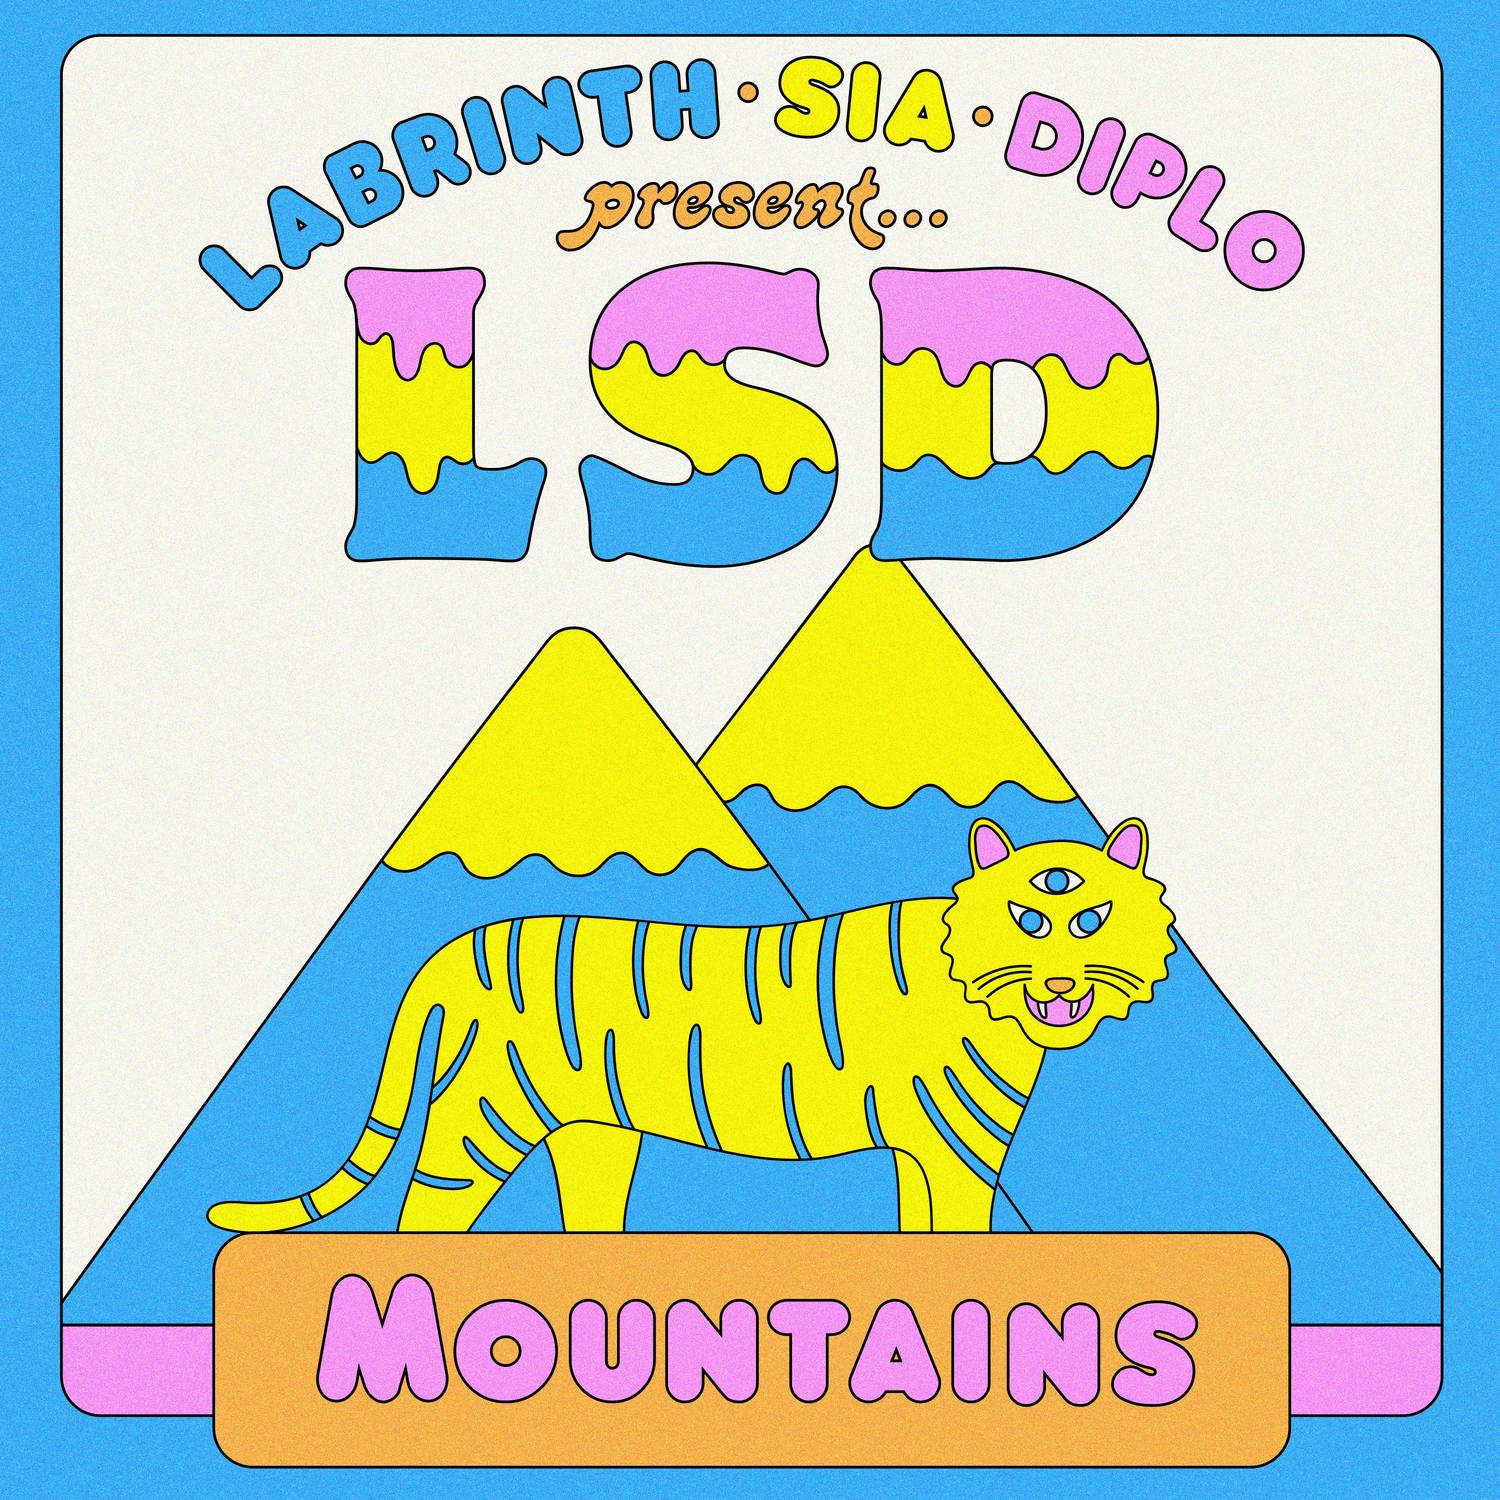 Mountains(LSD演唱單曲)